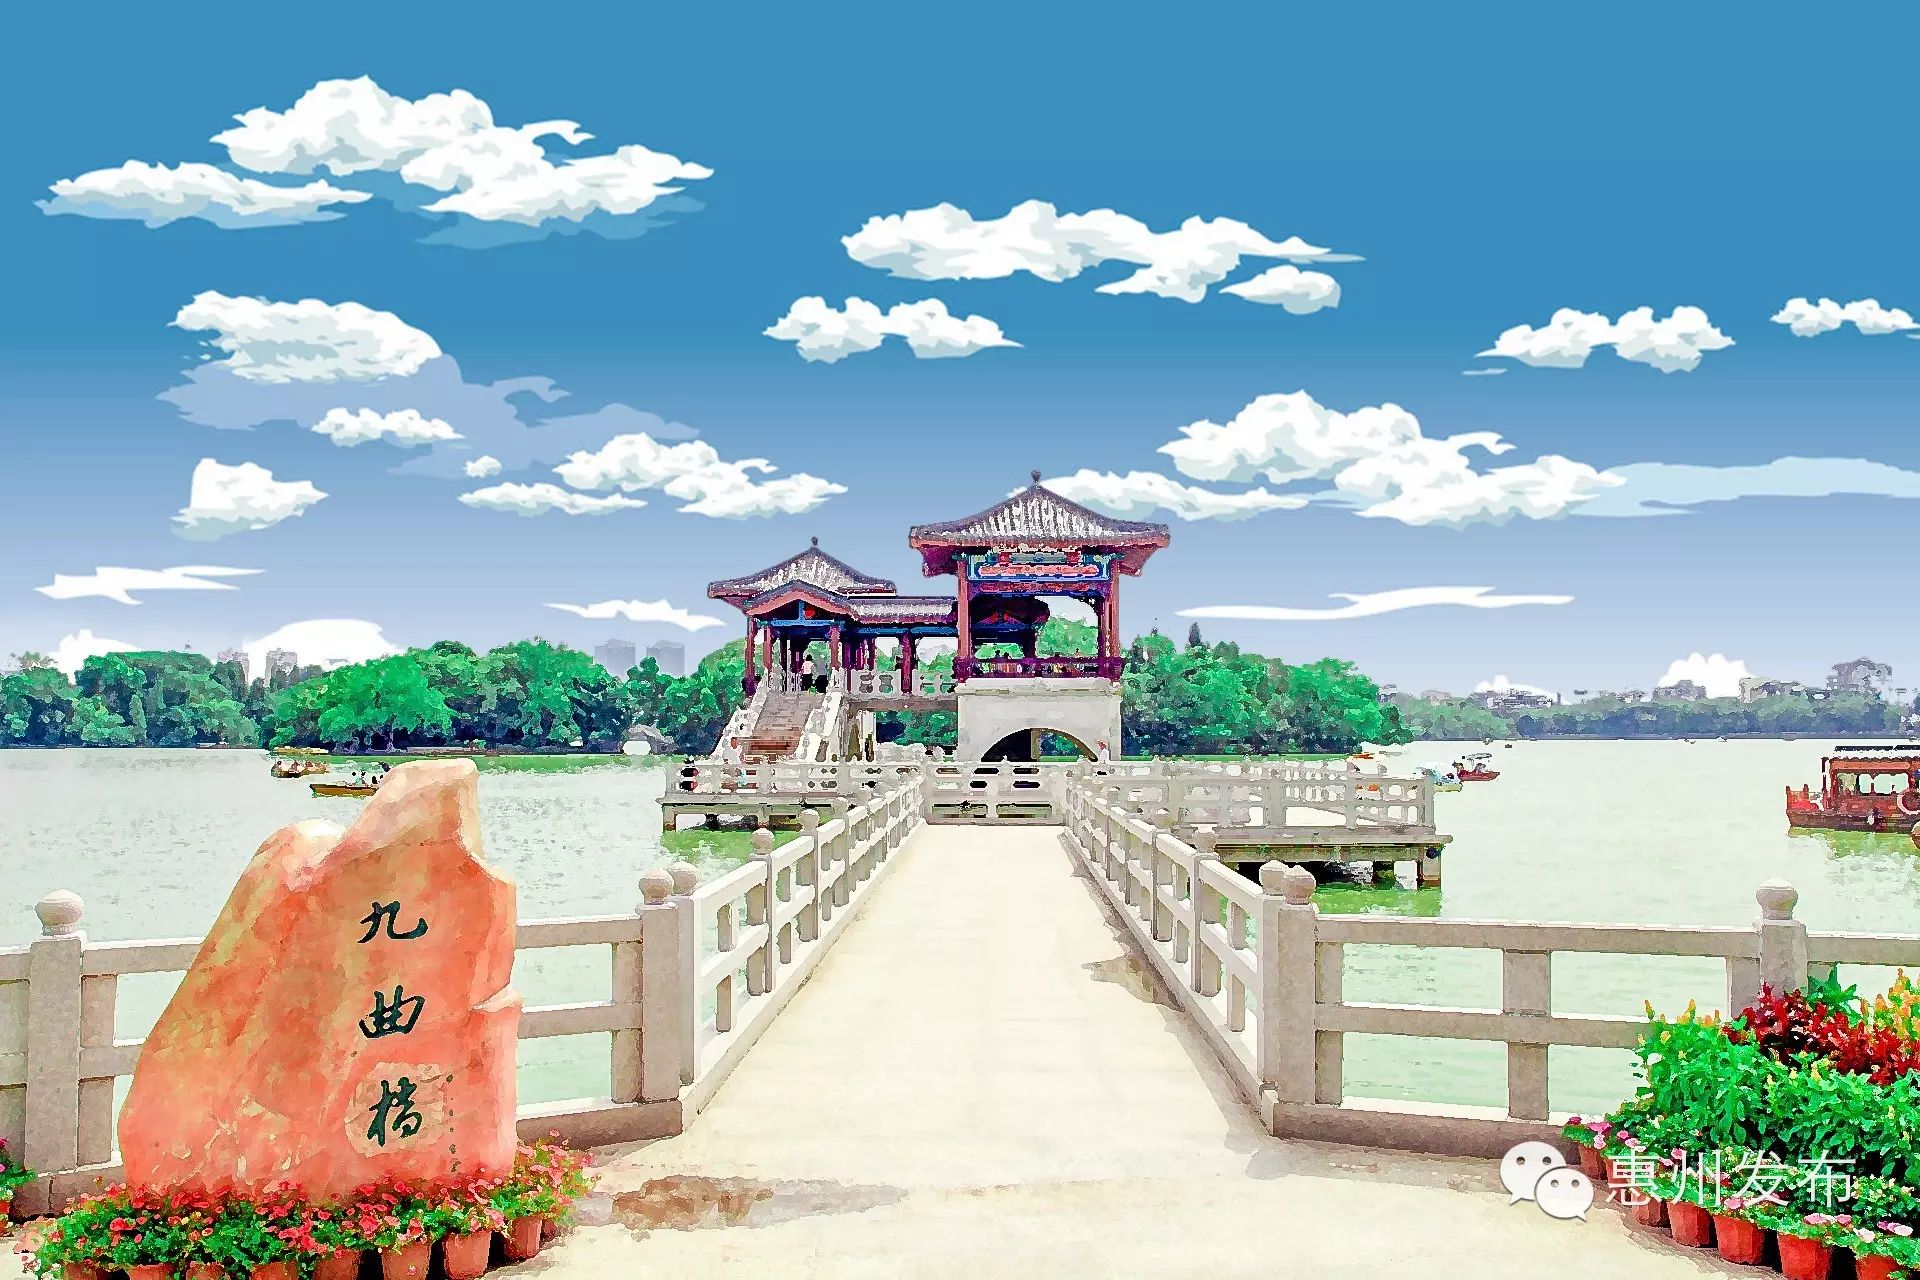 把惠州风景画进漫画里,直接就美呆啦!